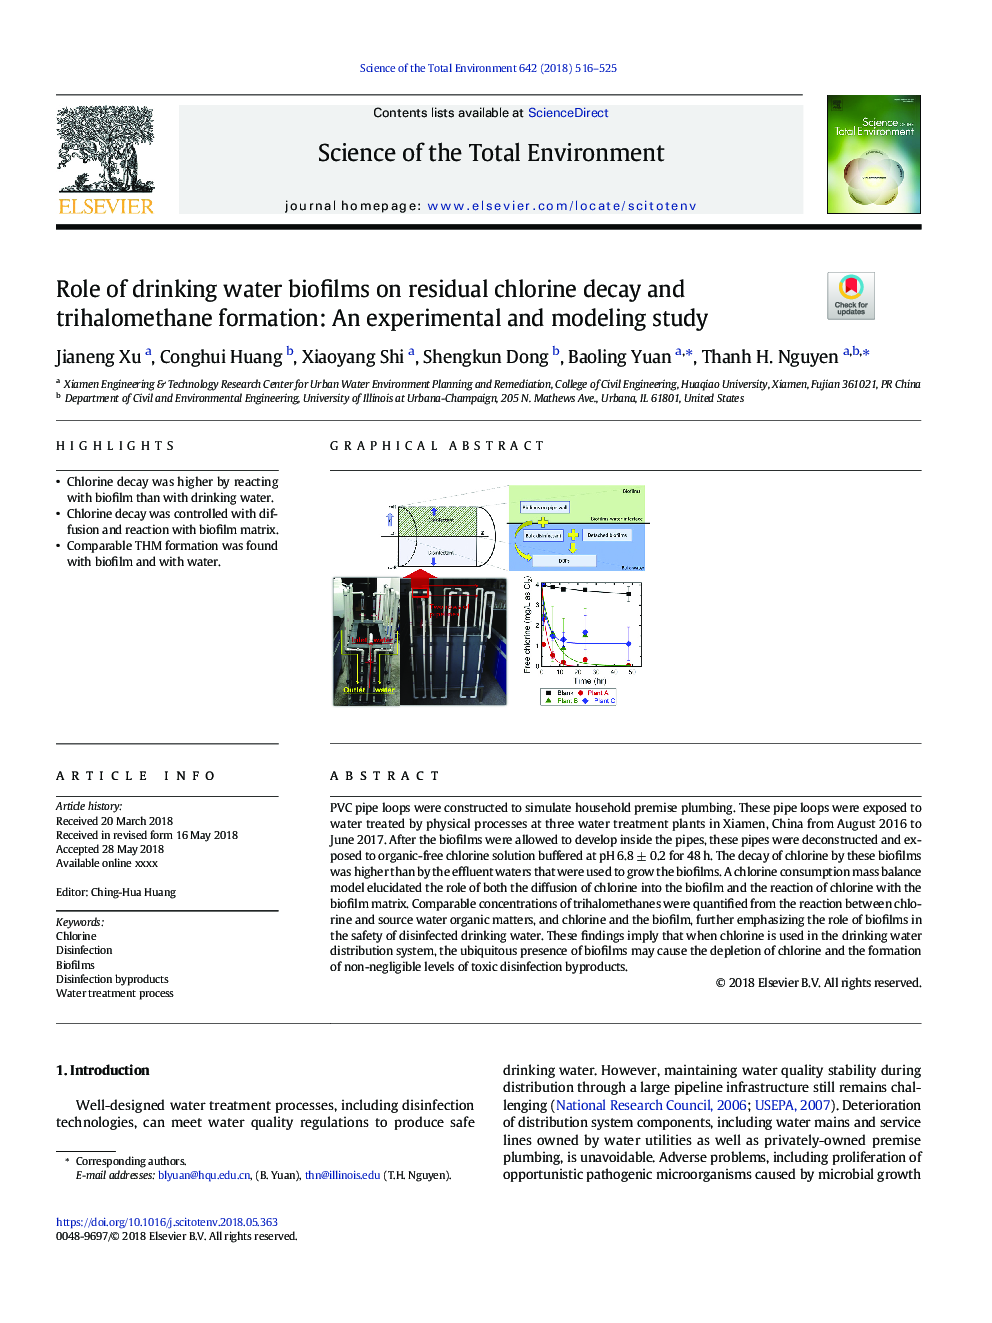 نقش بیوفیلم های آب آشامیدنی در کاهش فرسایش کلر و تولید تراهالموتان: یک مطالعه تجربی و مدل سازی 